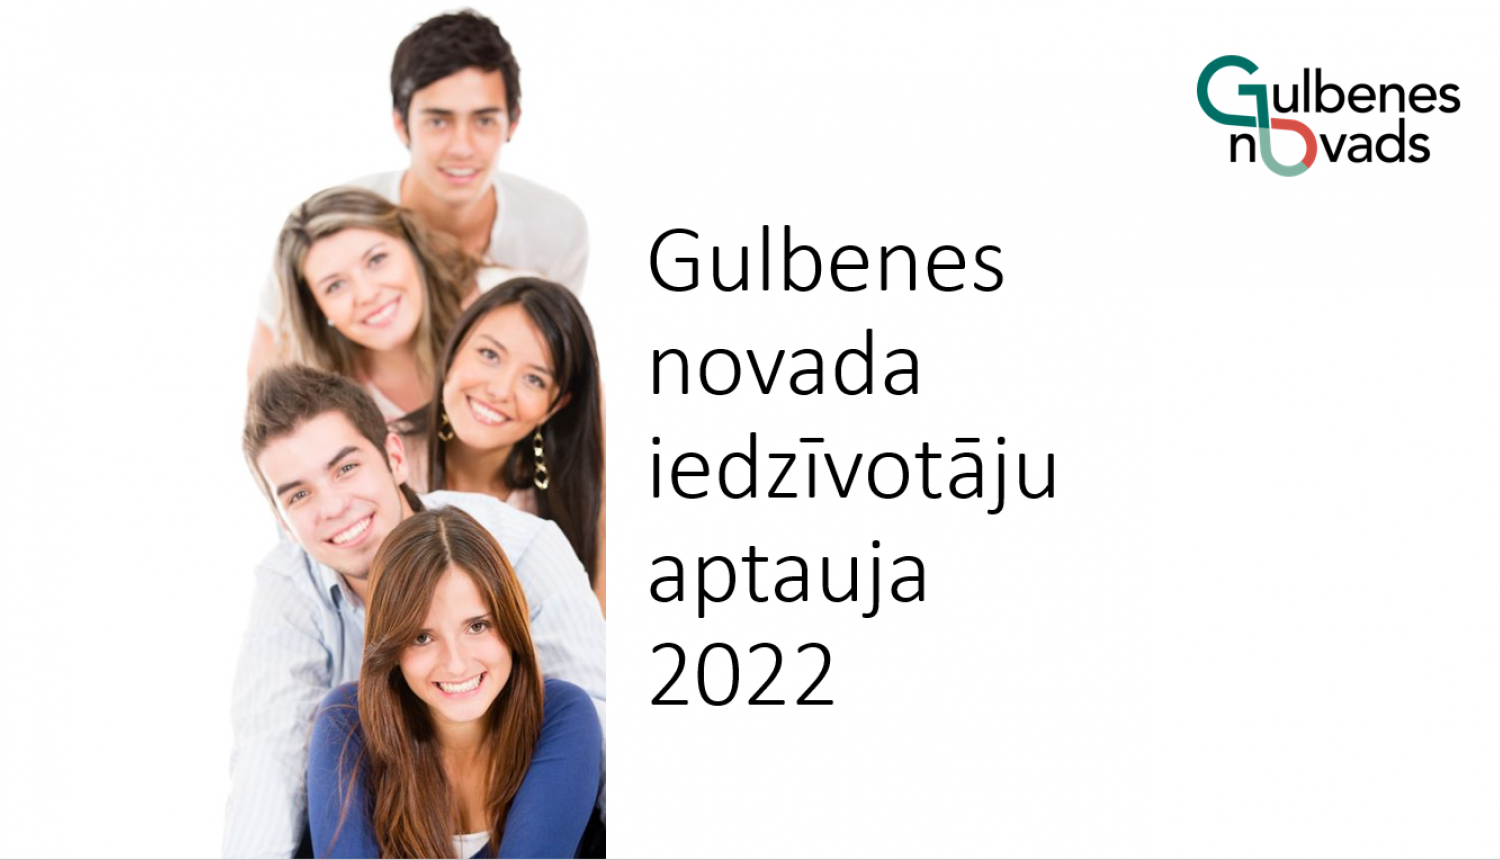 Attēls: Gulbenes novada iedzīvotāju aptaujas 2022 apkopojums